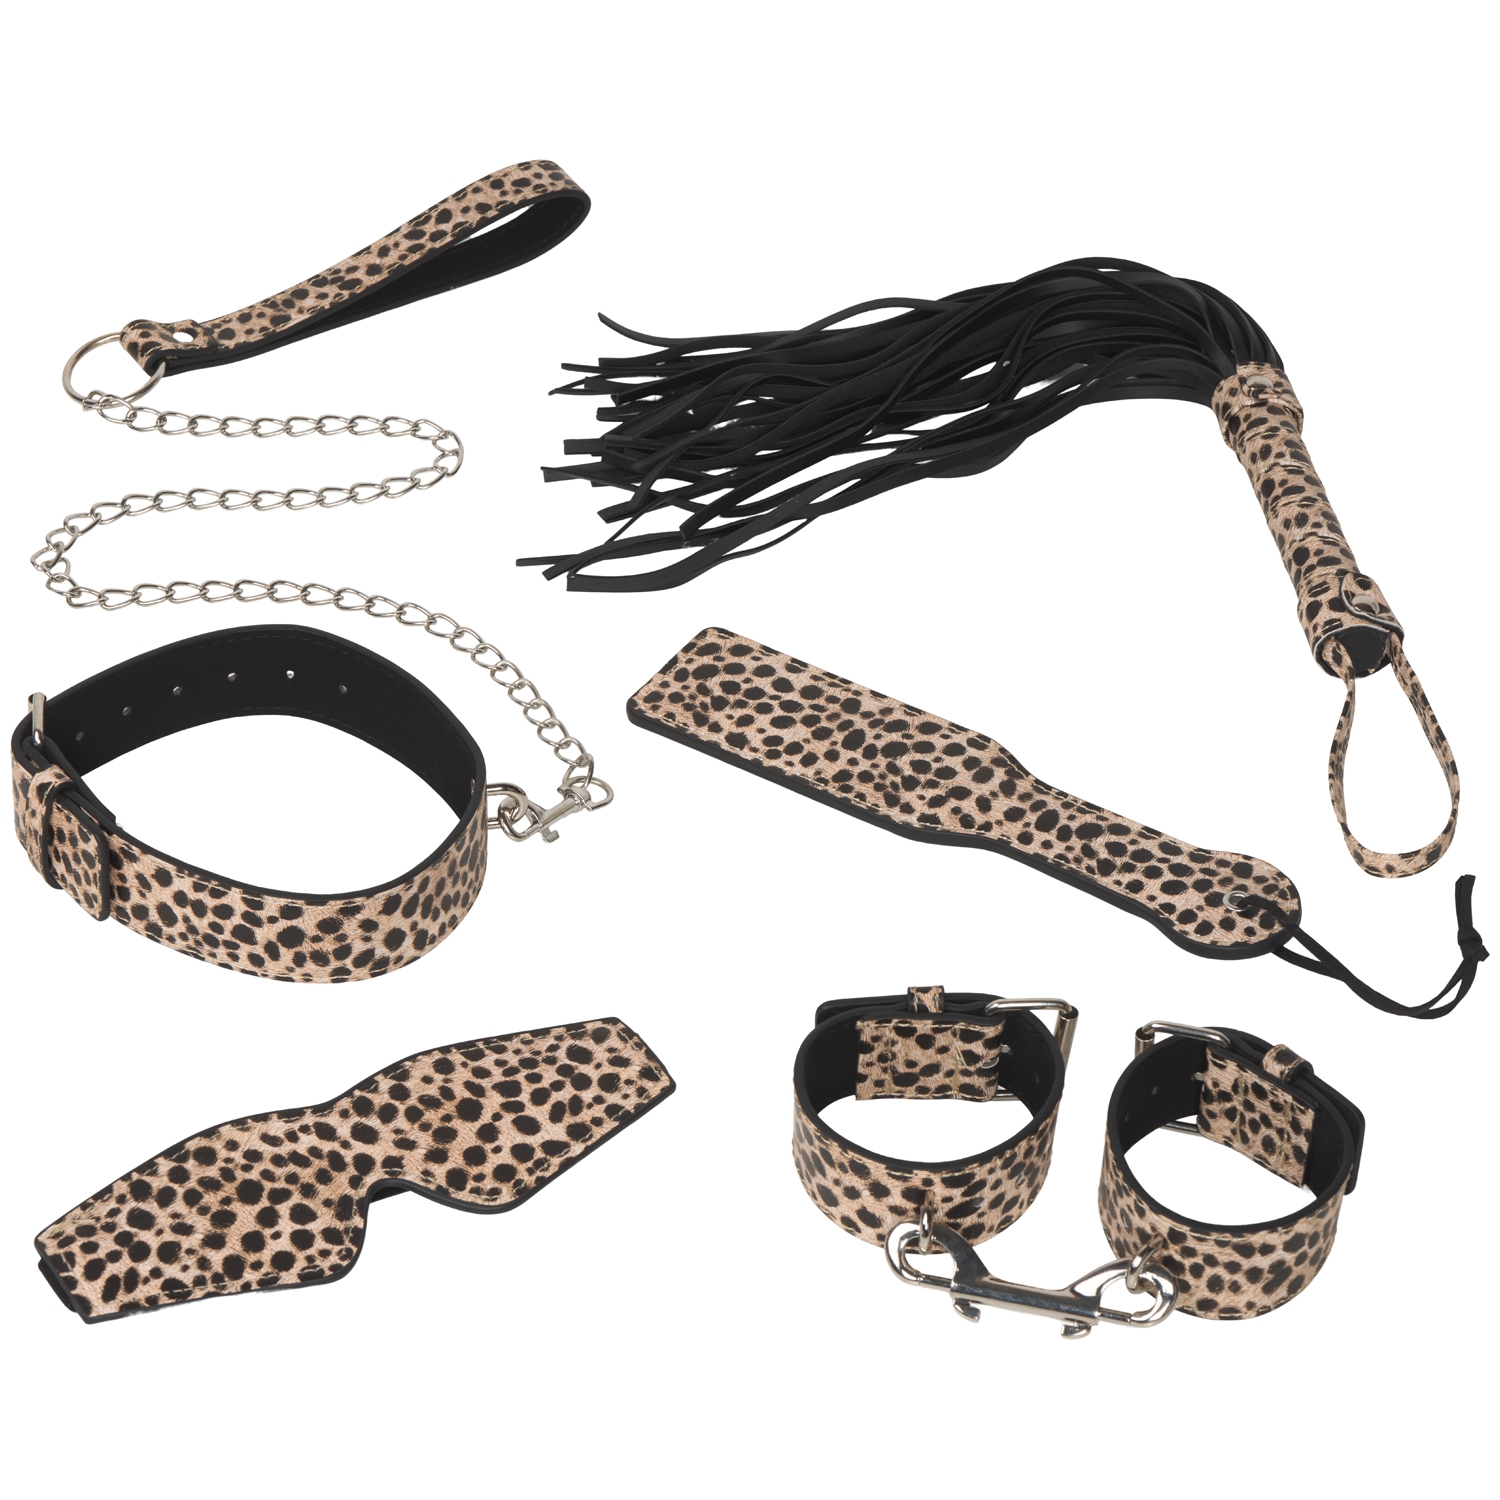 Kinky BDSM Bondage set - 10-piece - Panther print - Hismith®